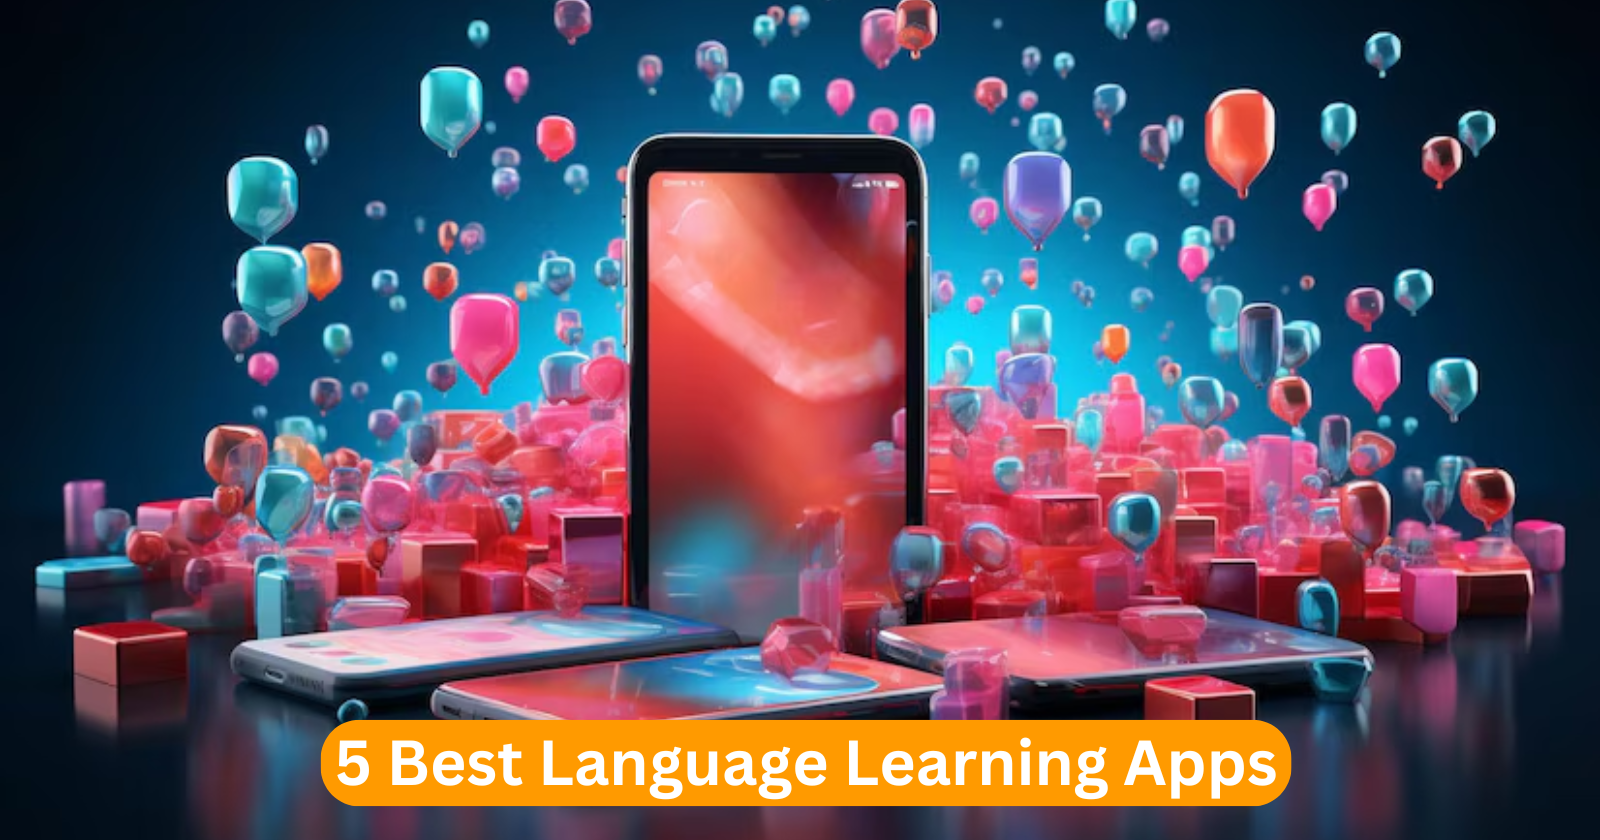 5 Best Language Learning Apps: इन 5 एप्स से सीखिए कोई भी भाषा फ्री मैं